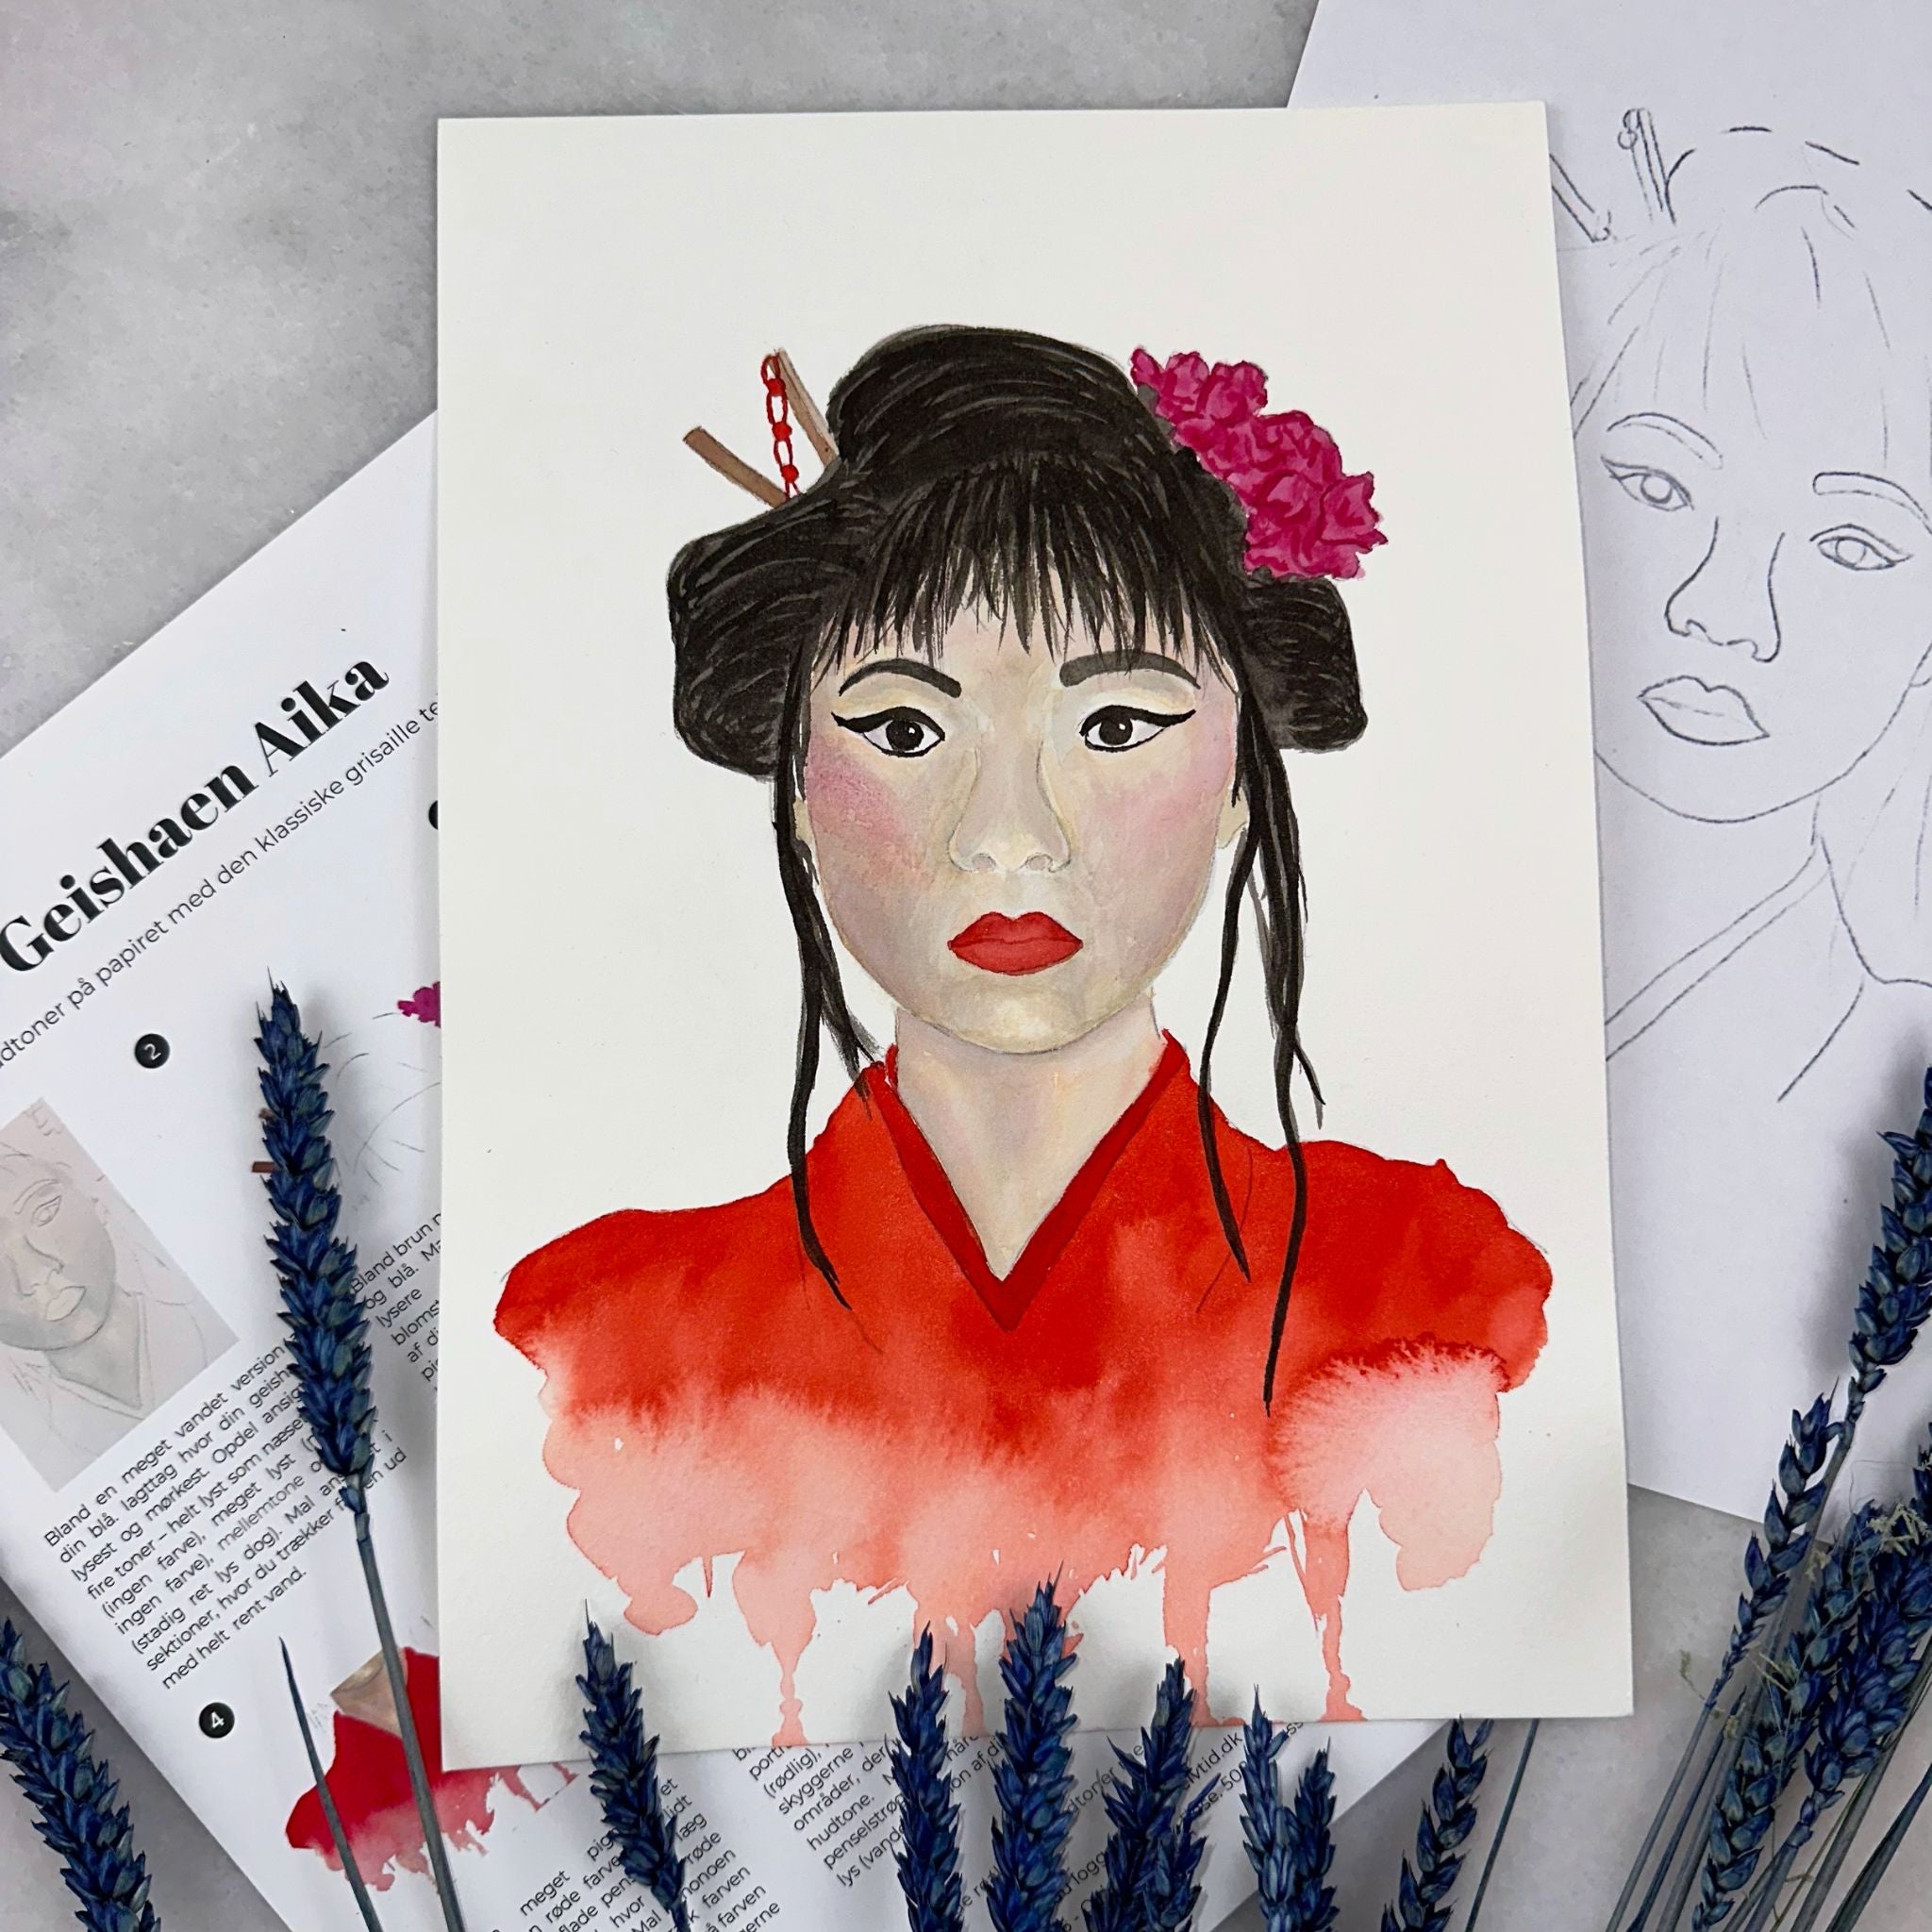 sumi-e kunst i japan boksen med blæk og akvarel